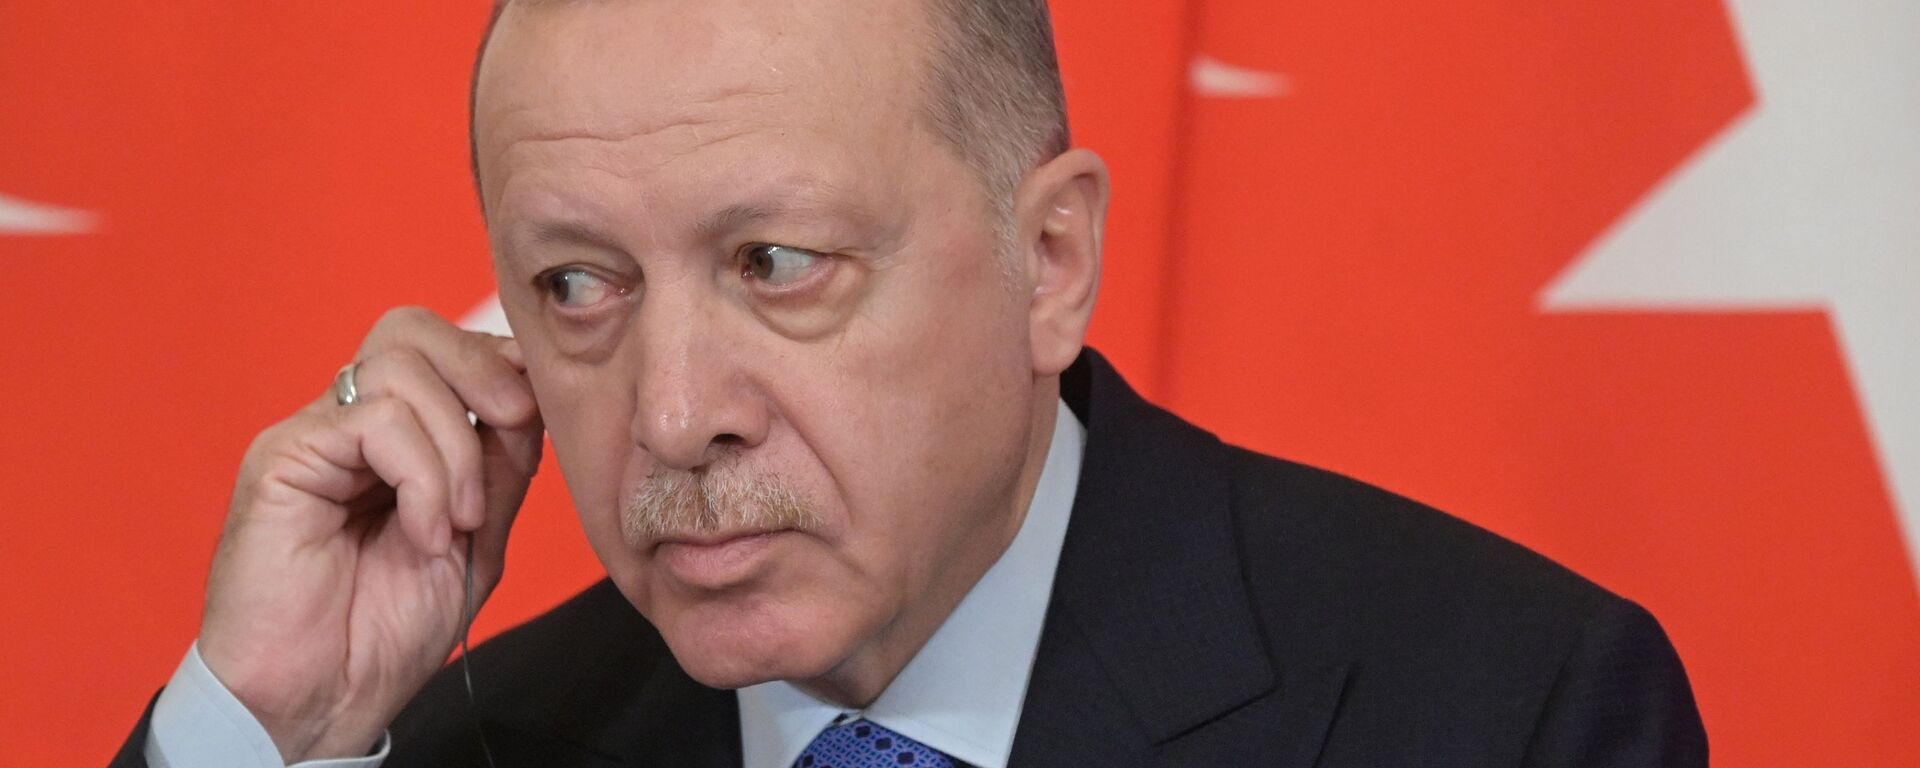 Президент Турции Реджеп Тайип Эрдоган - Sputnik Узбекистан, 1920, 21.12.2020